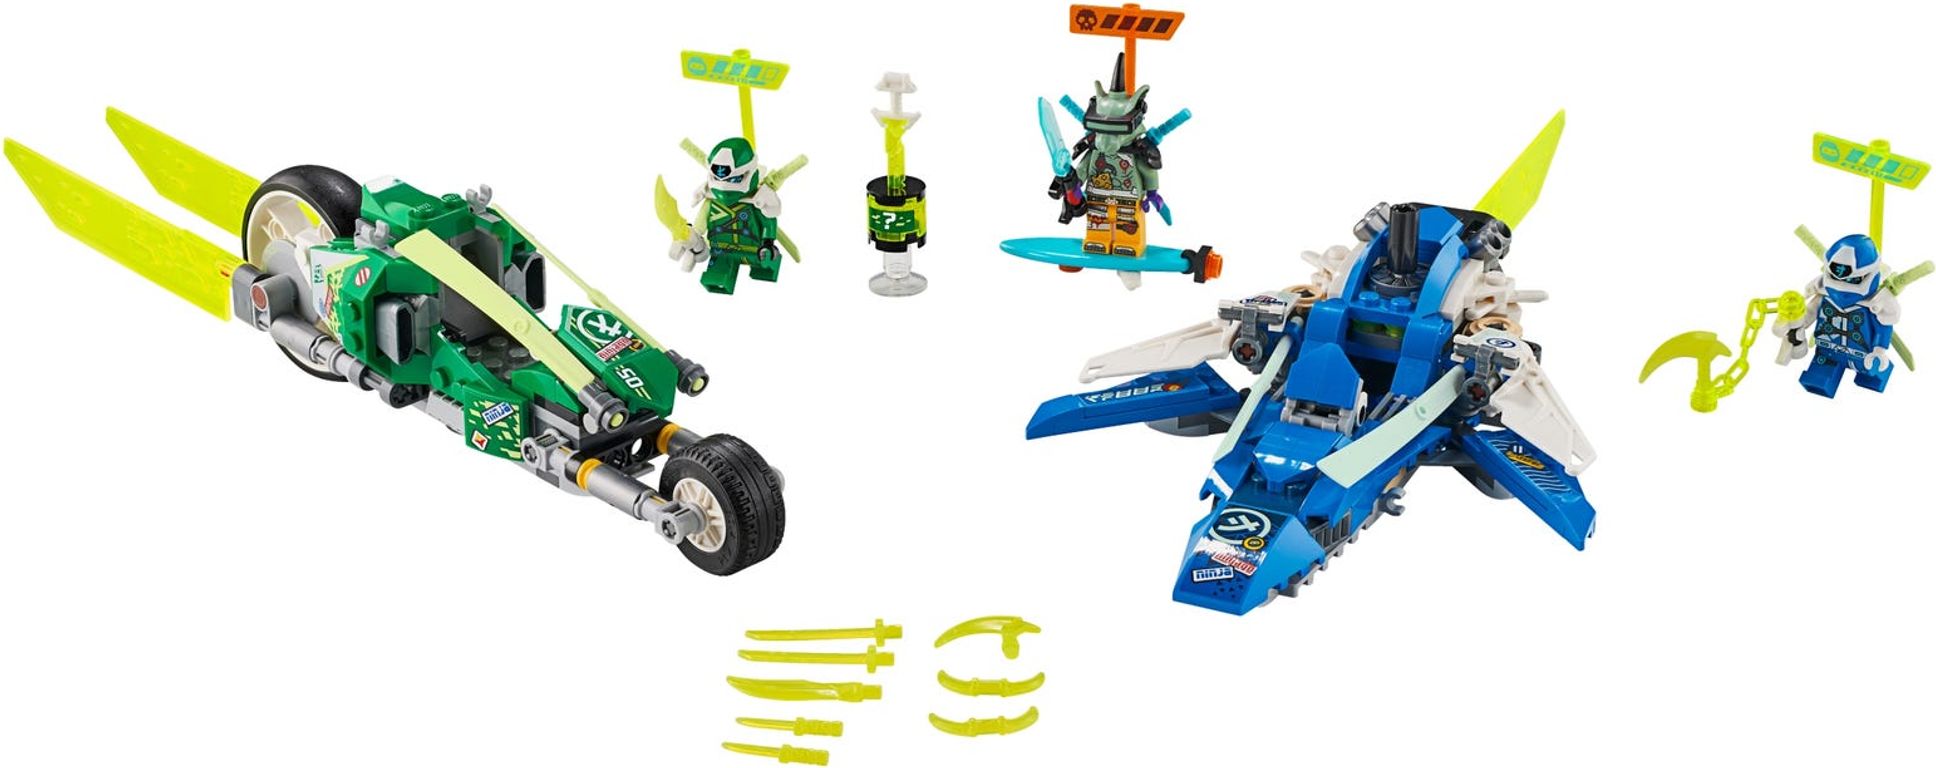 LEGO® Ninjago Jay and Lloyd's Velocity Racers components